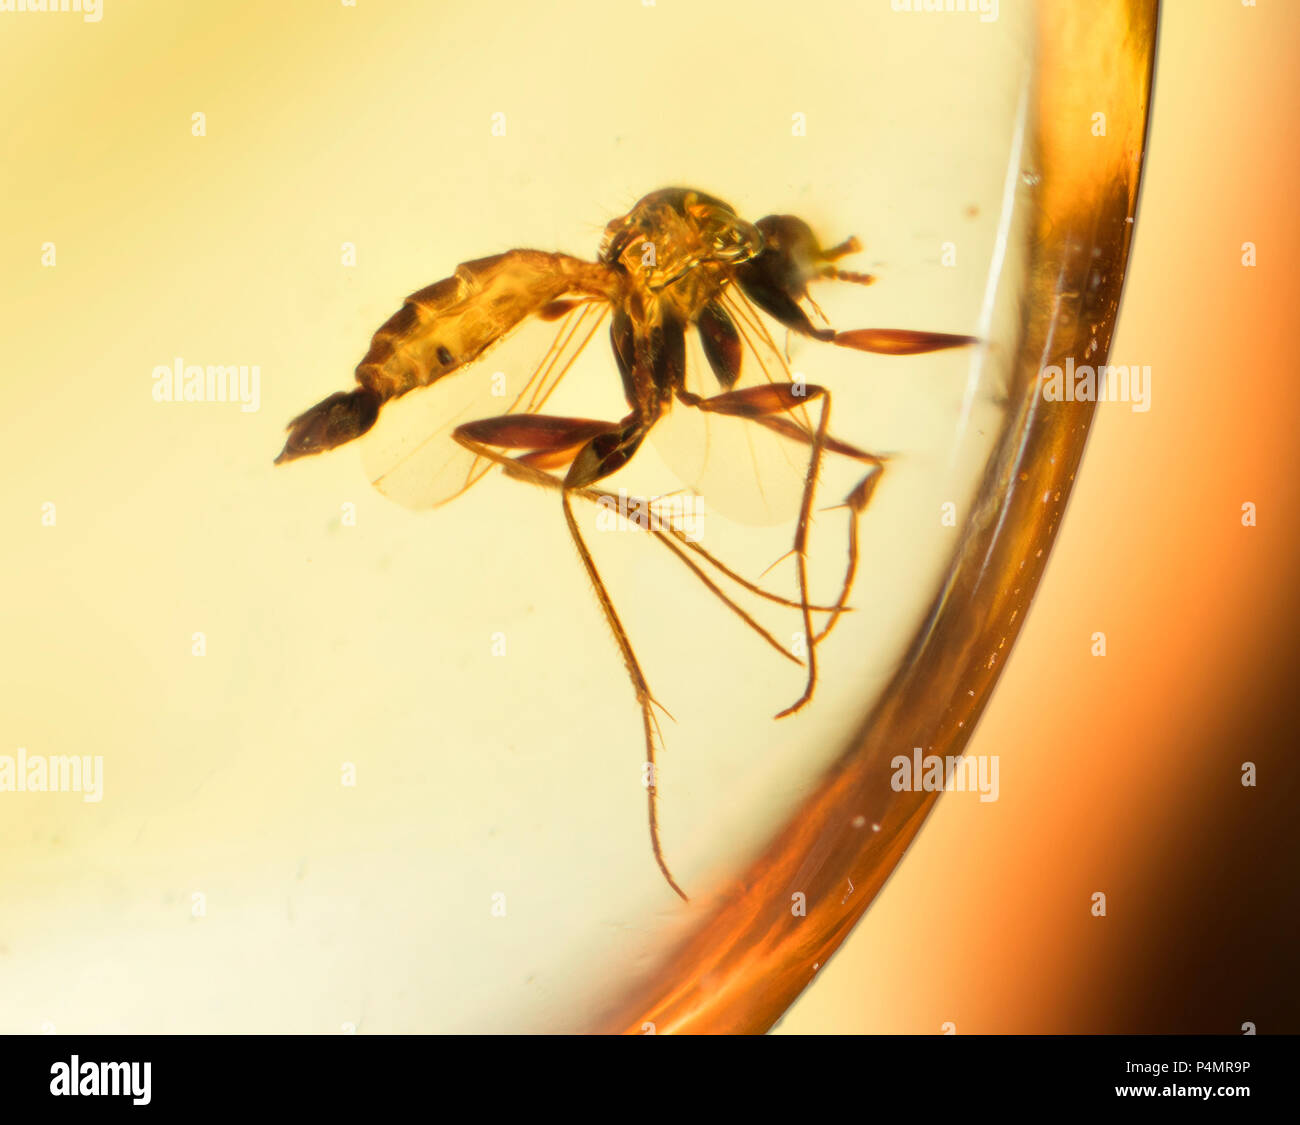 Insectes mouche piégée dans l'ambre Birman Banque D'Images